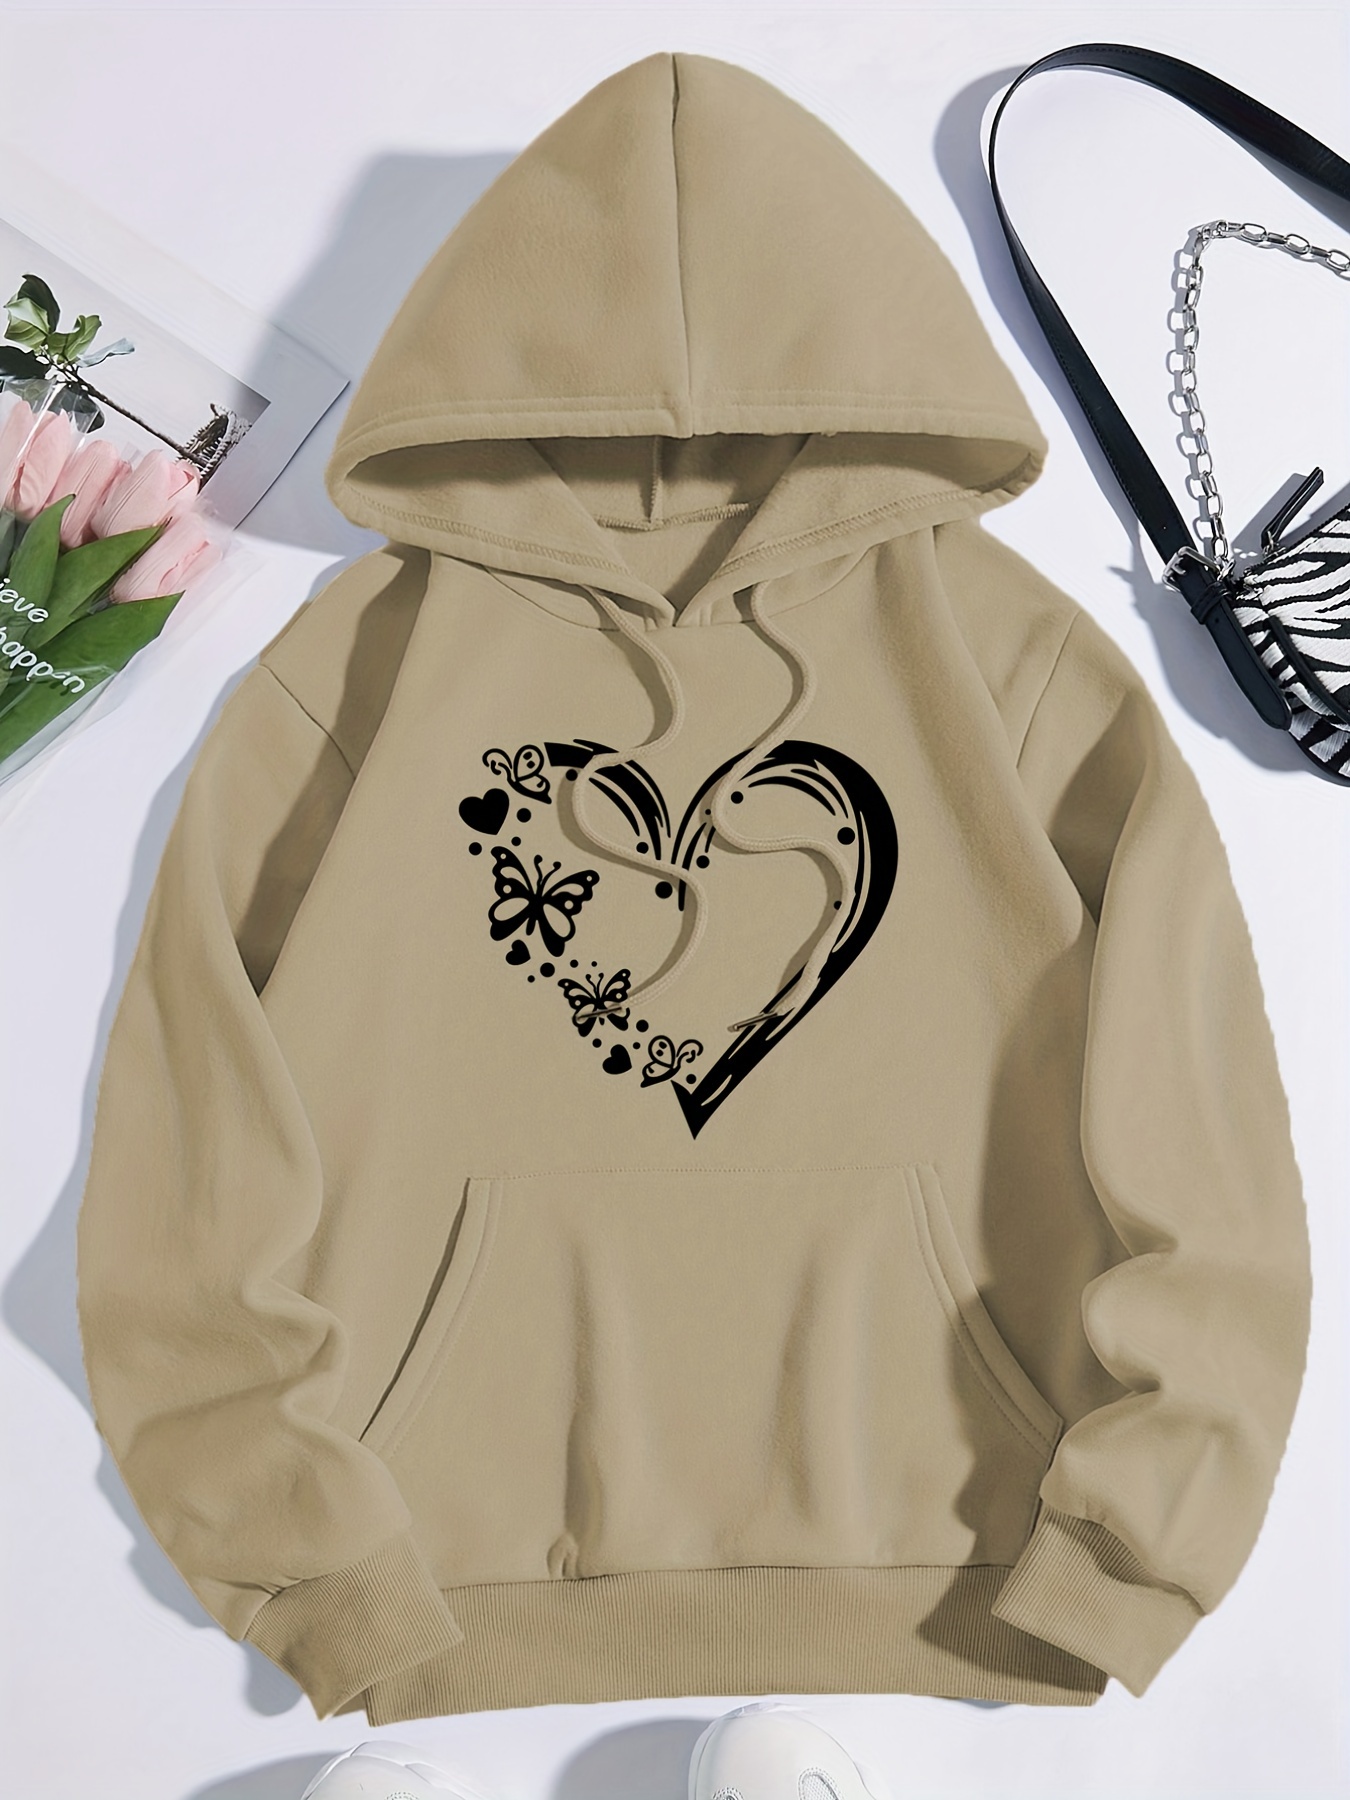  PRDECE Sweatshirt for Women- Heart and Gesture Print